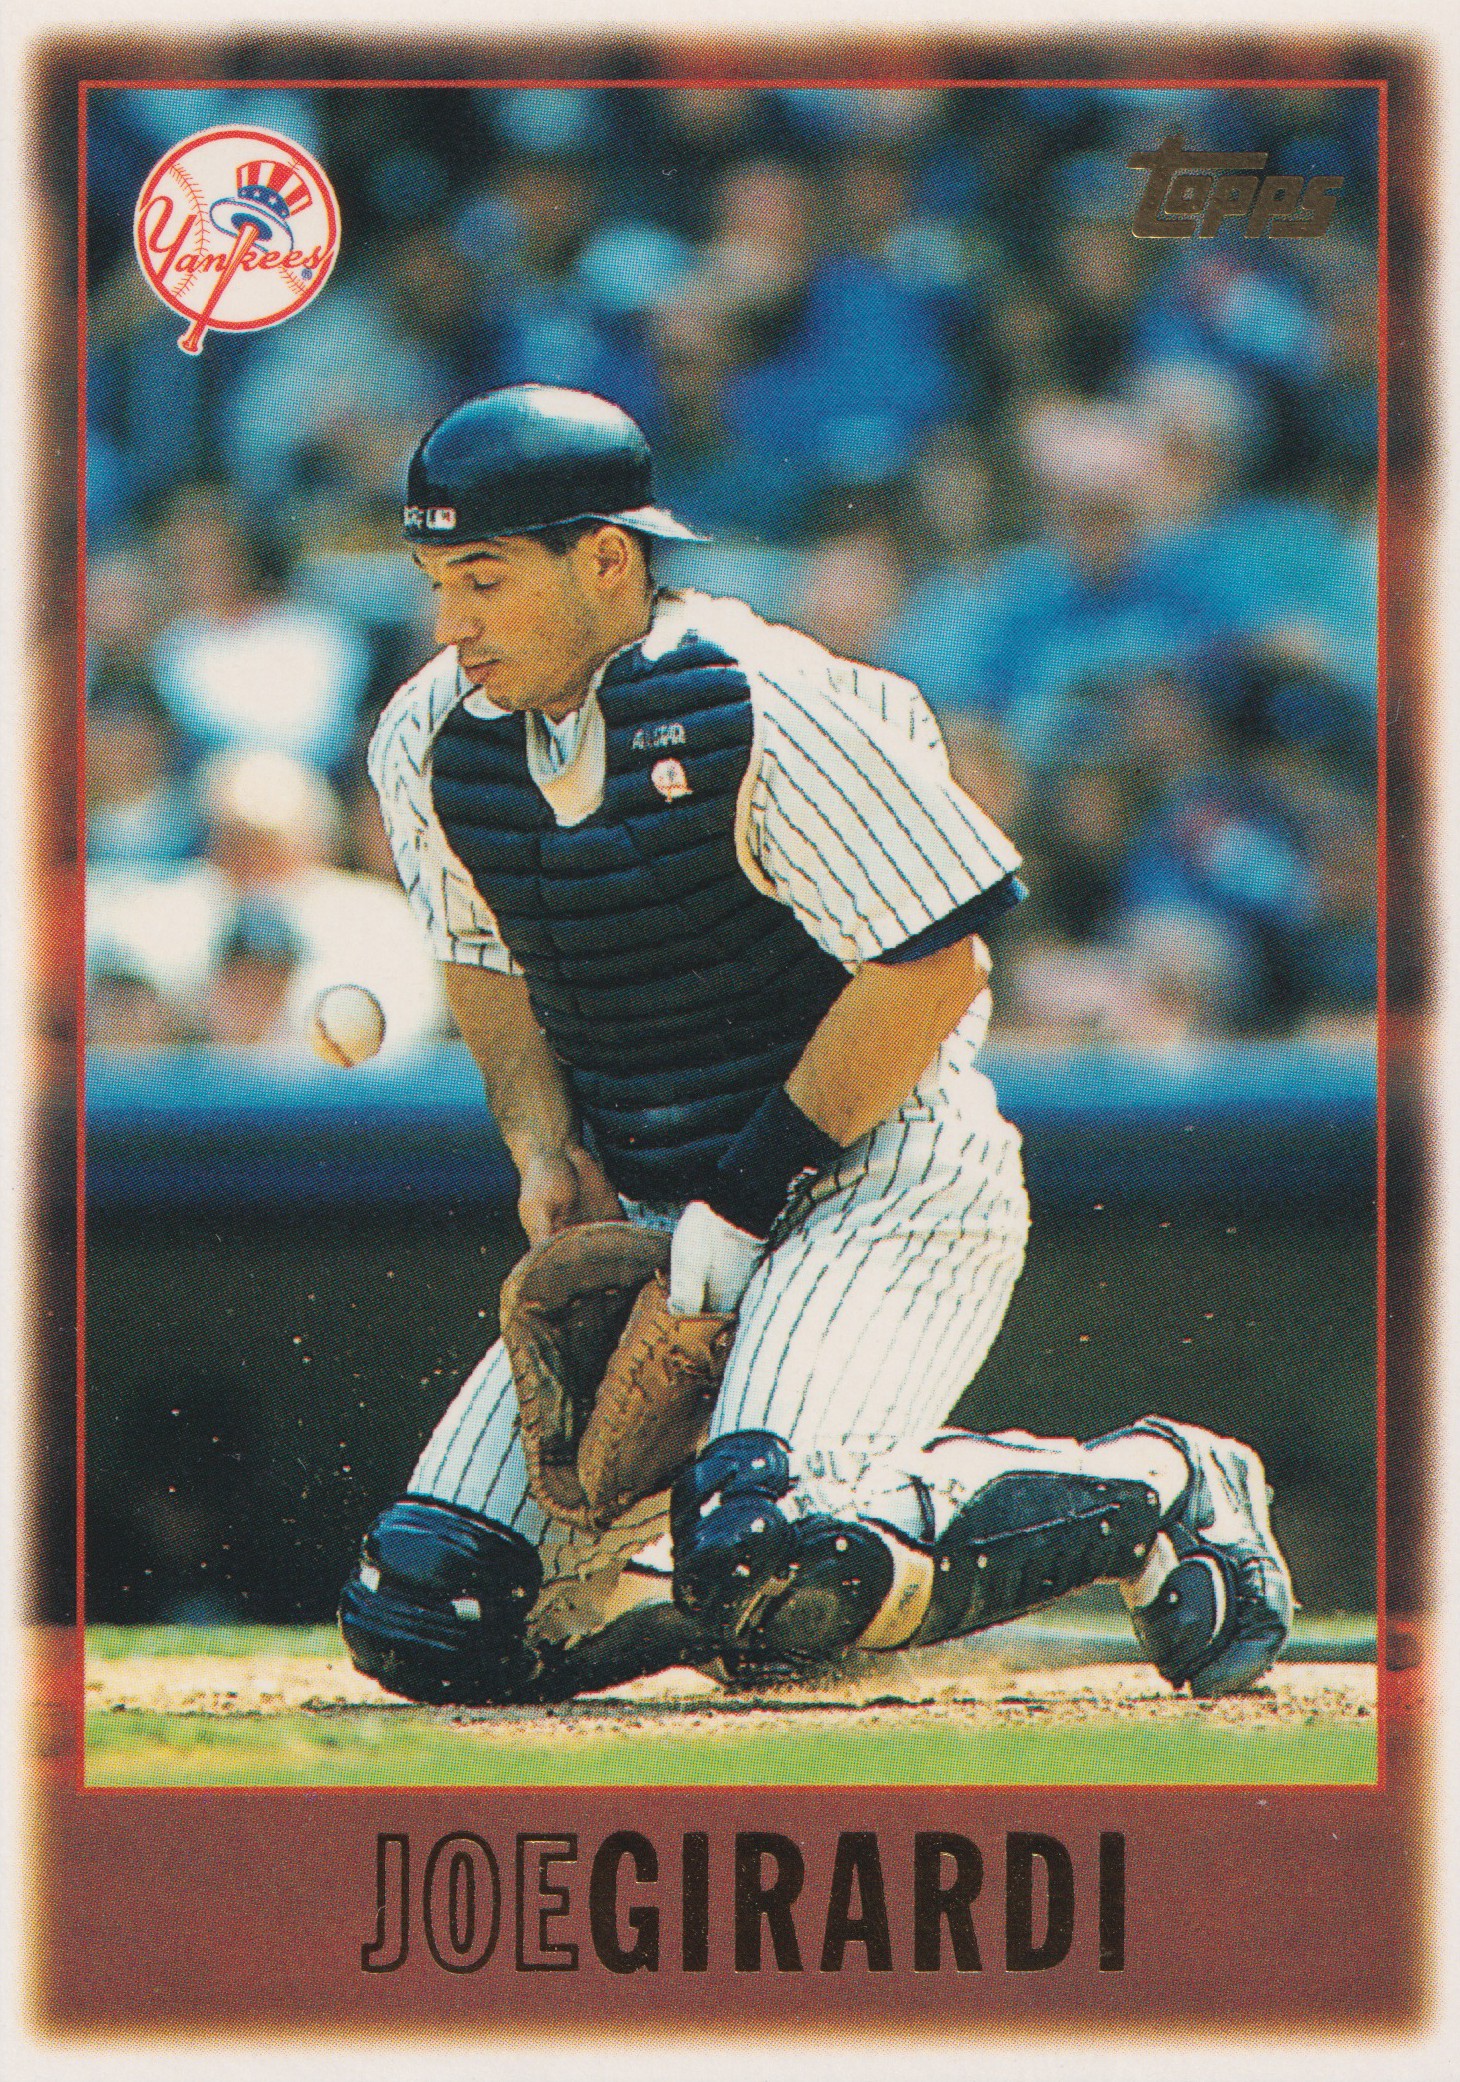 2009 Topps #555 Joe Girardi, New York Yankees.